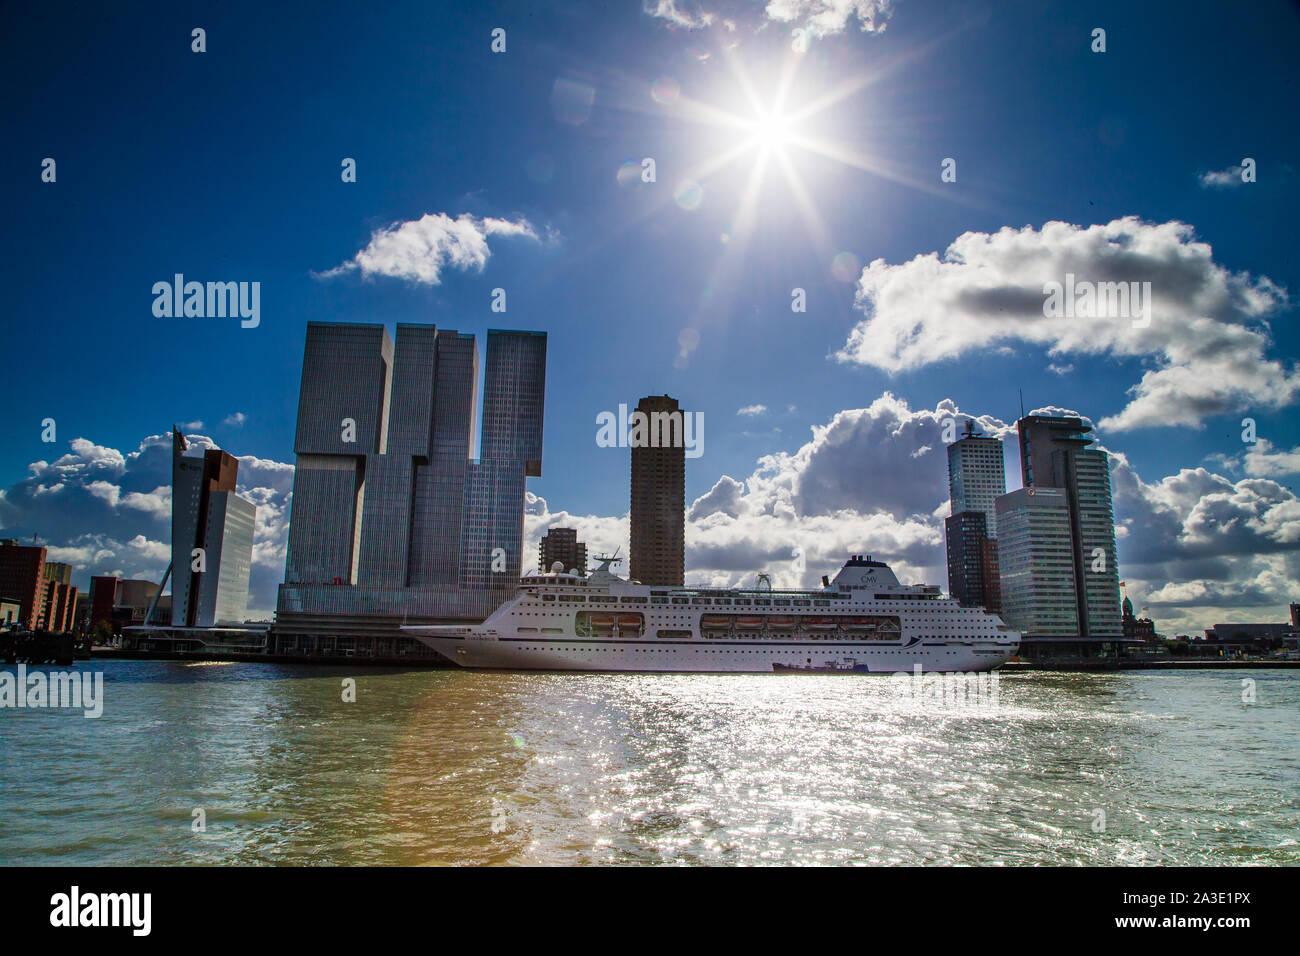 Porto di Rotterdam con la nave di crociera seduta 8n davanti a moderni grattacieli. Foto Stock